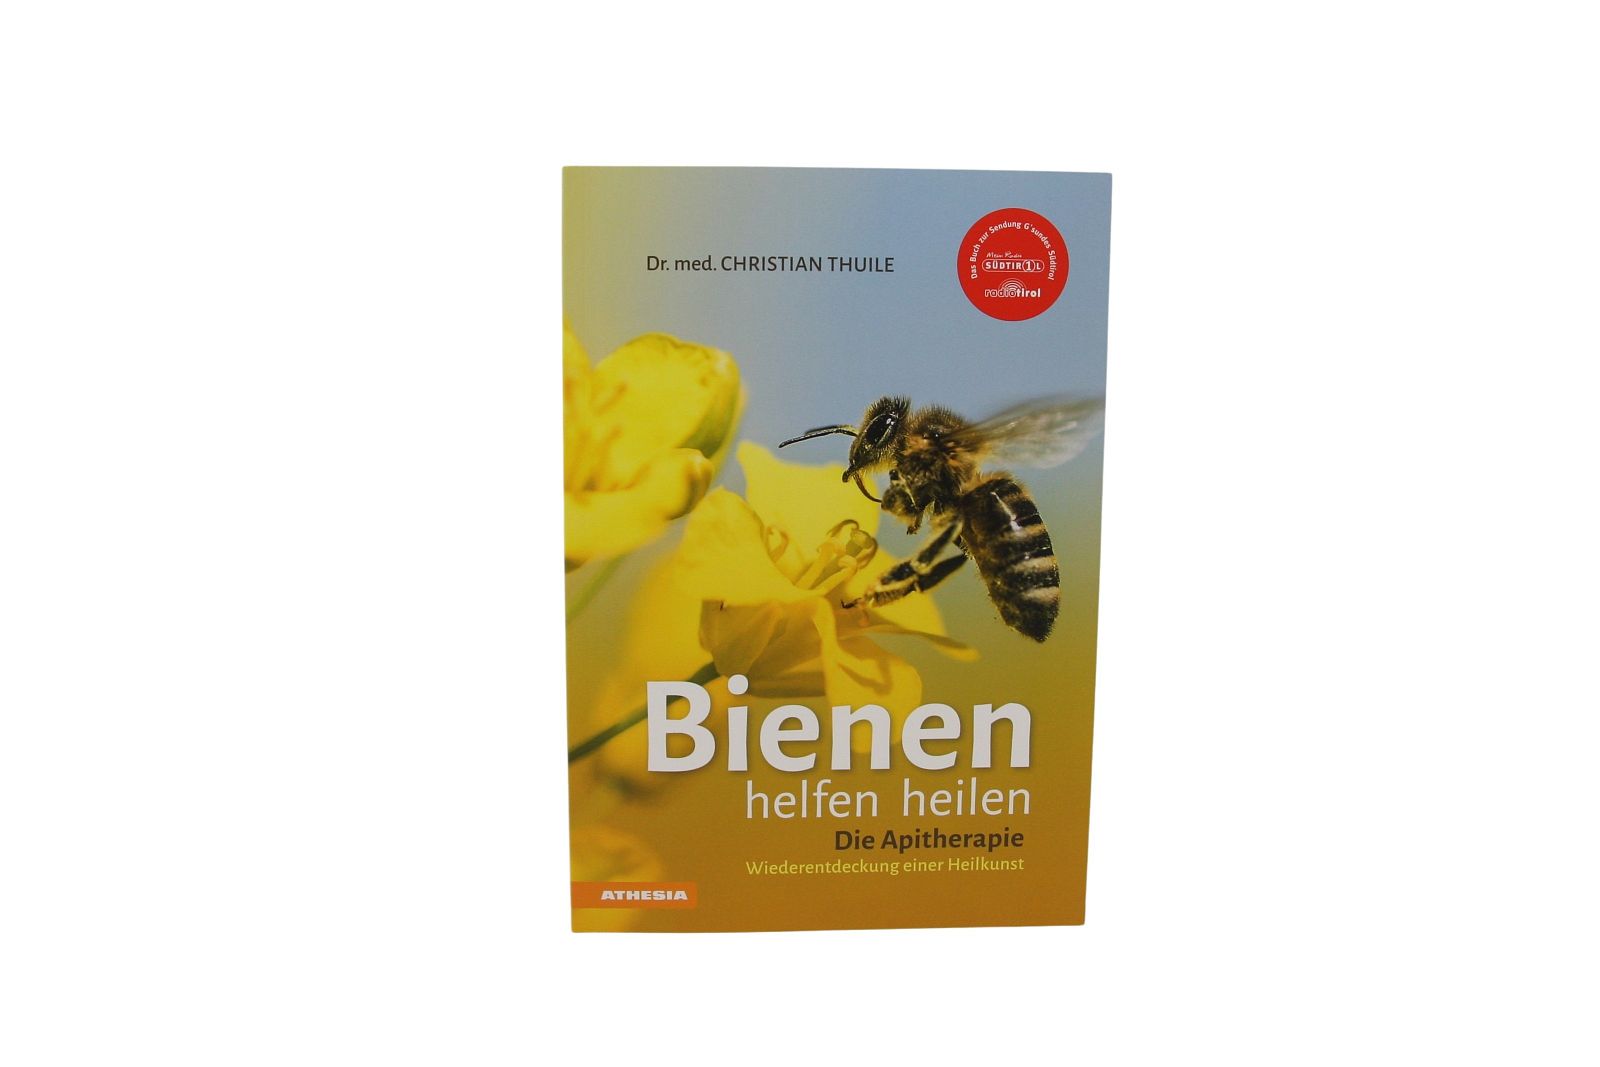 Bienen helfen heilen - Die Apitherapie, Dr. med Christian Thuile